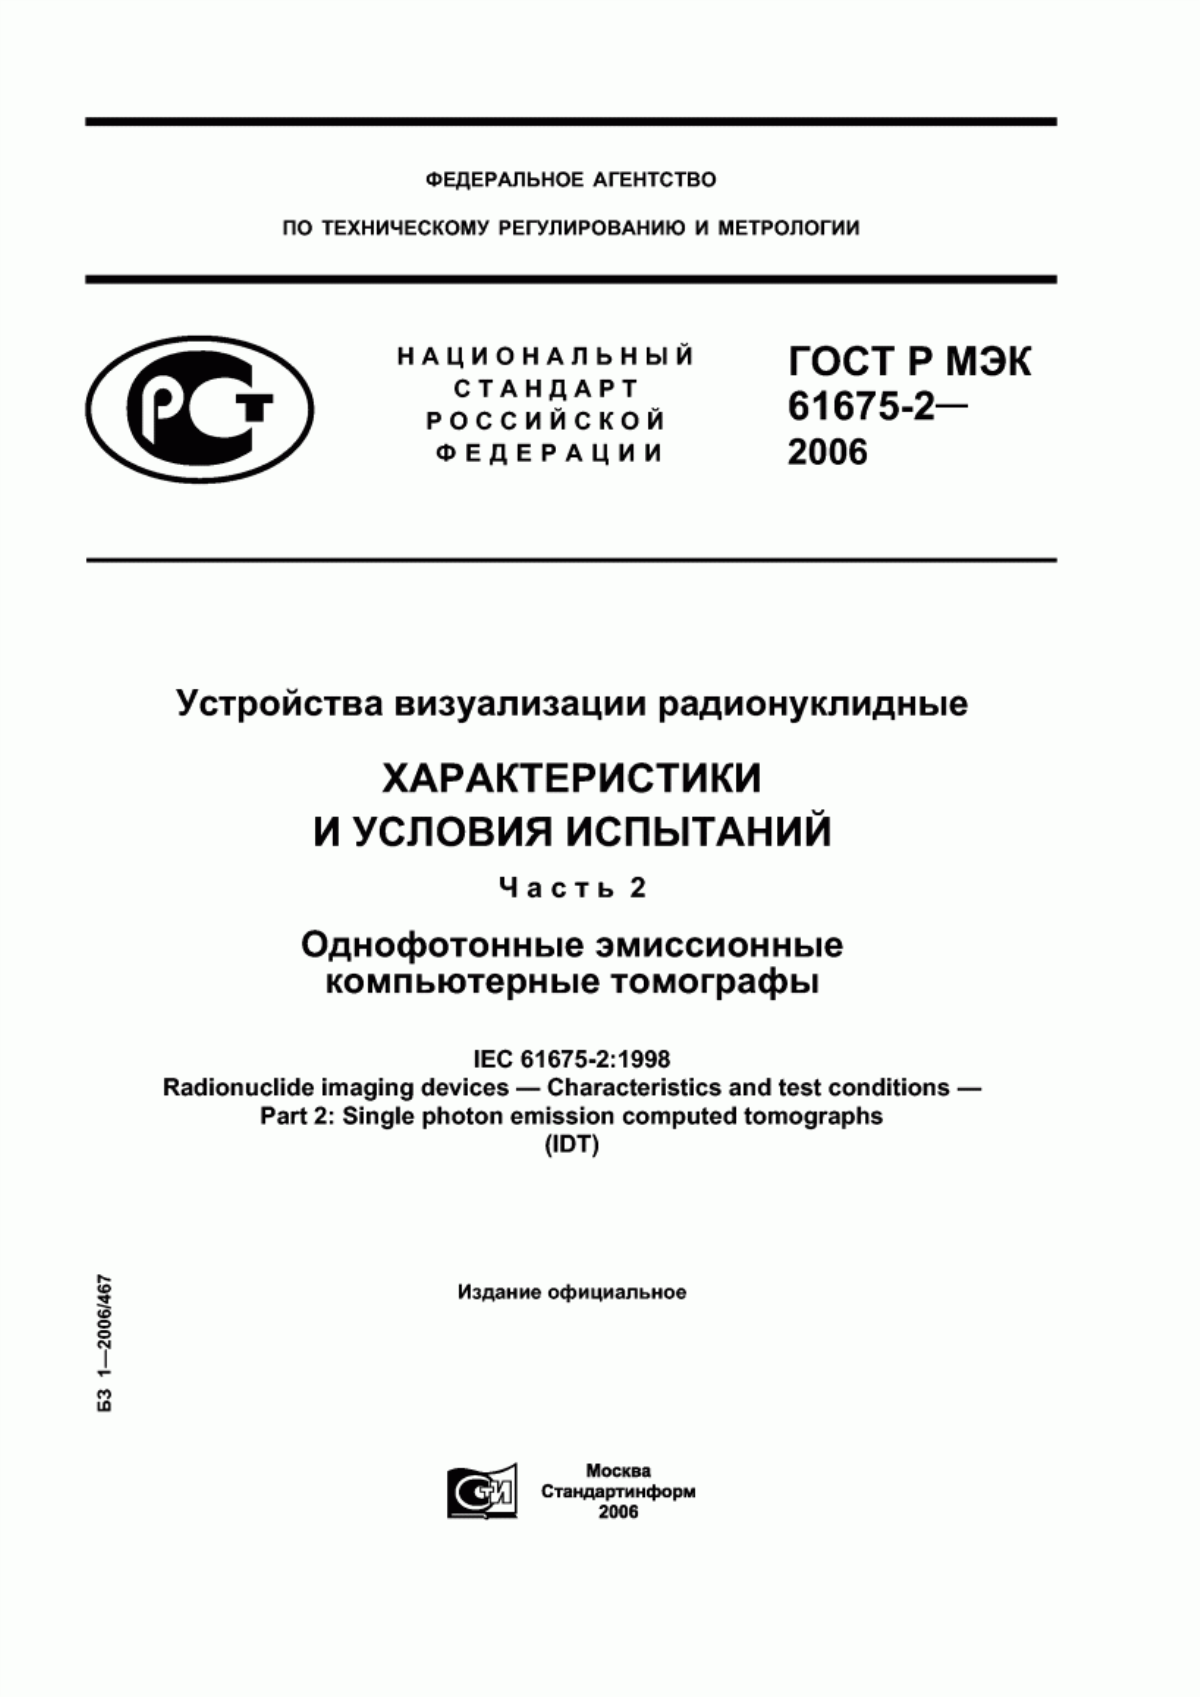 ГОСТ Р МЭК 61675-2-2006 Устройства визуализации радионуклидные. Характеристики и условия испытаний. Часть 2. Однофотонные эмиссионные компьютерные томографы